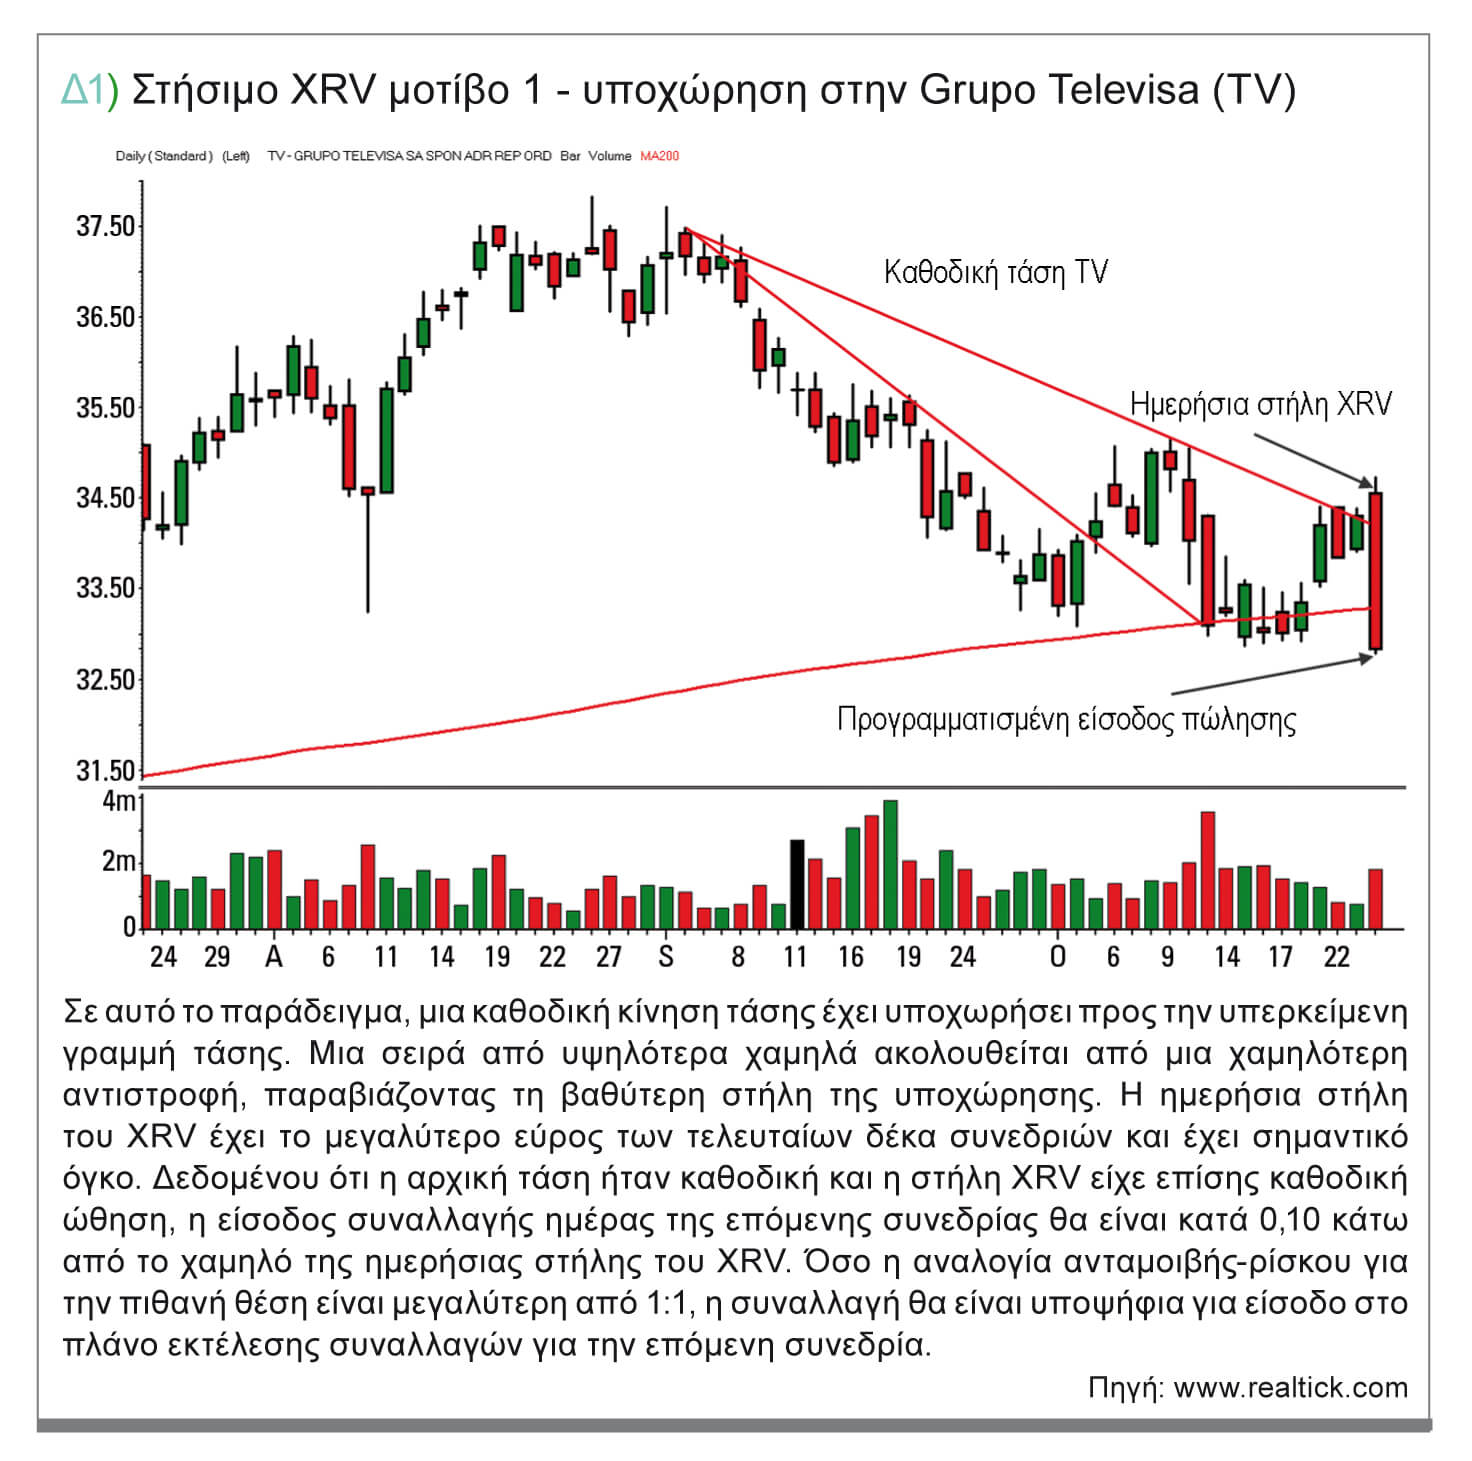 Δ1) Στήσιμο XRV μοτίβο 1 - υποχώρηση στην Grupo Televisa (TV)